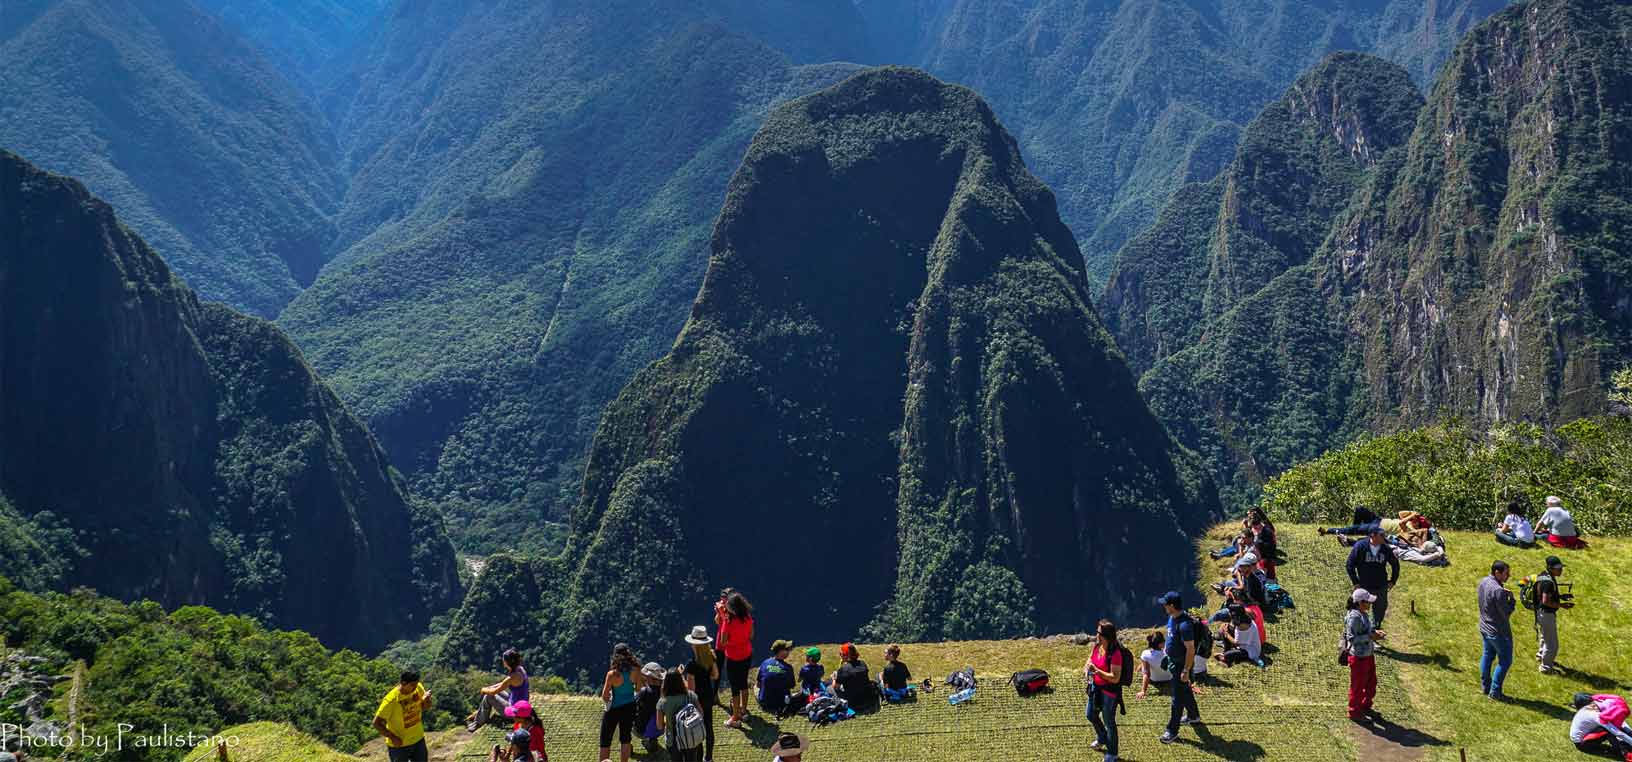 Crowds in Machu Picchu